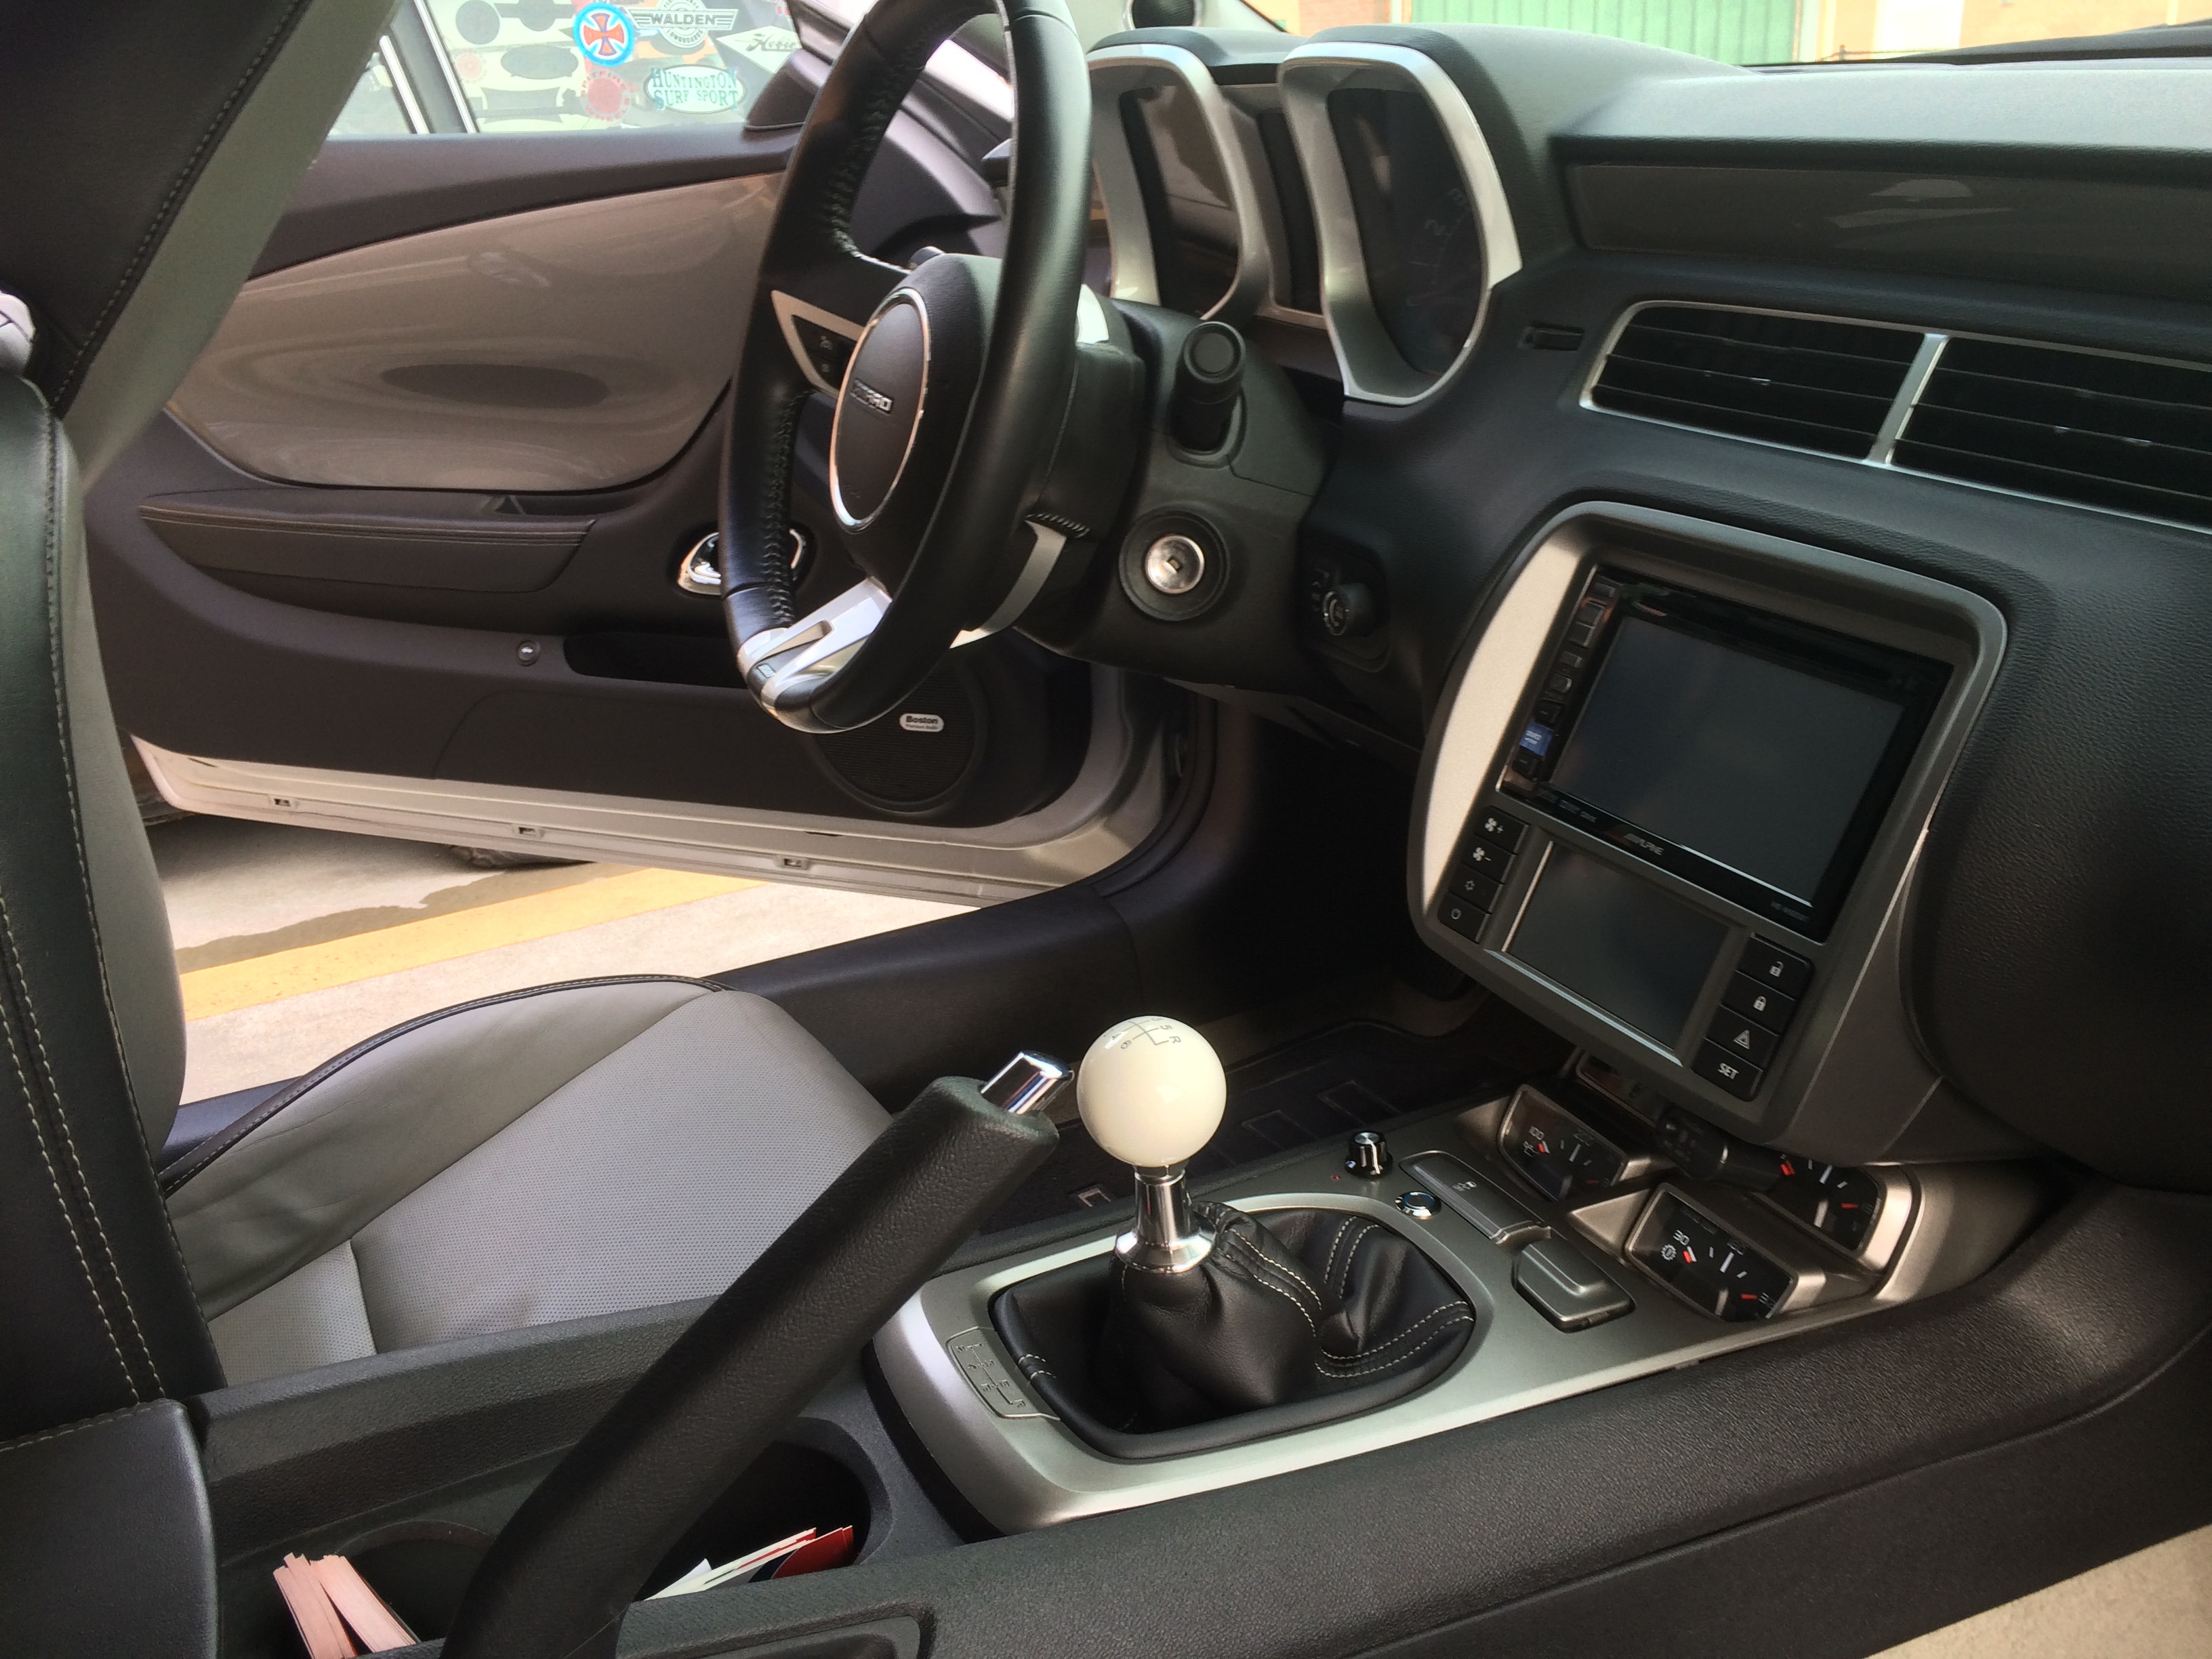 2011 Camaro Ss Audio Build Camaro Forums Chevy Camaro